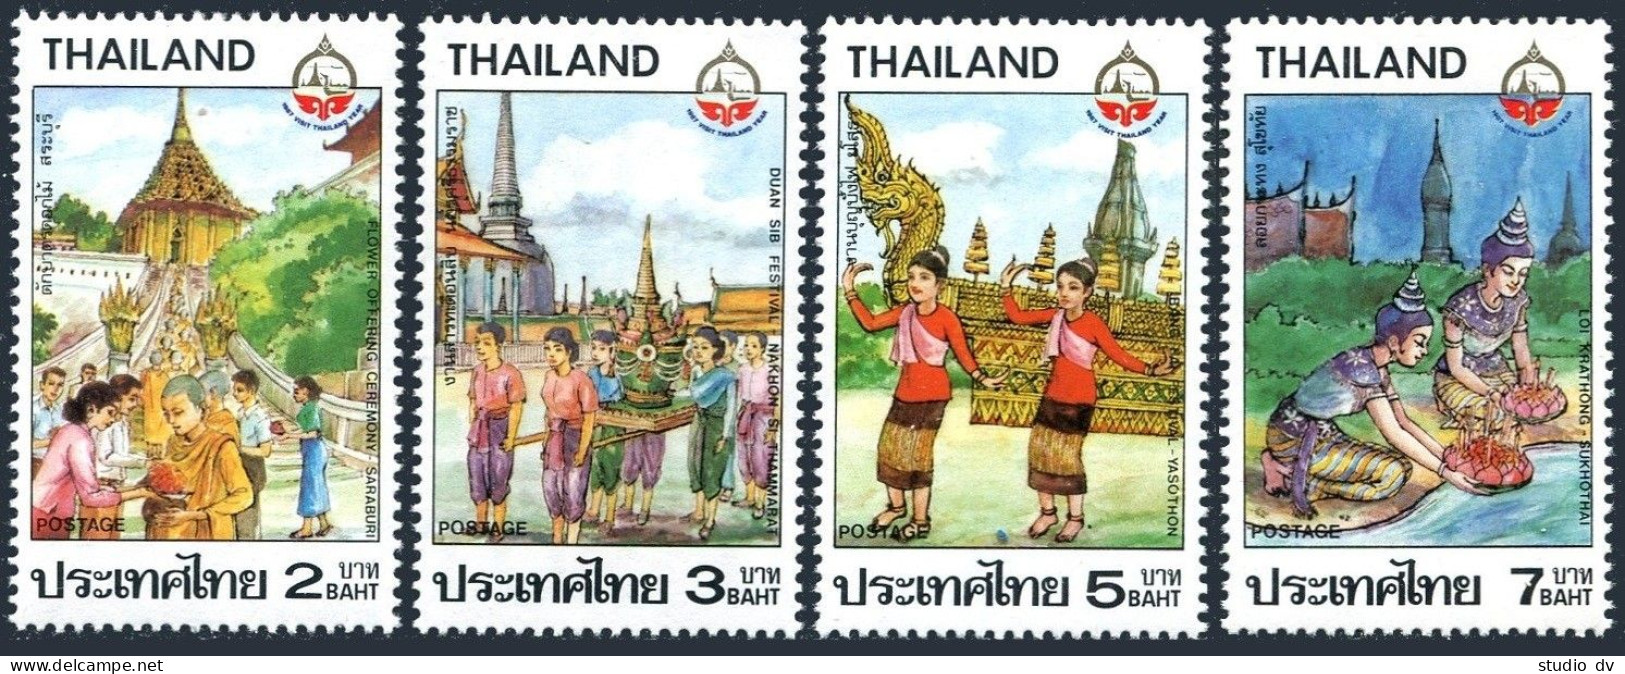 Thailand 1186-1189,MNH.Mi 1210-1213. Tourism Year 1987. Ceremonies, Festivals. - Thailand